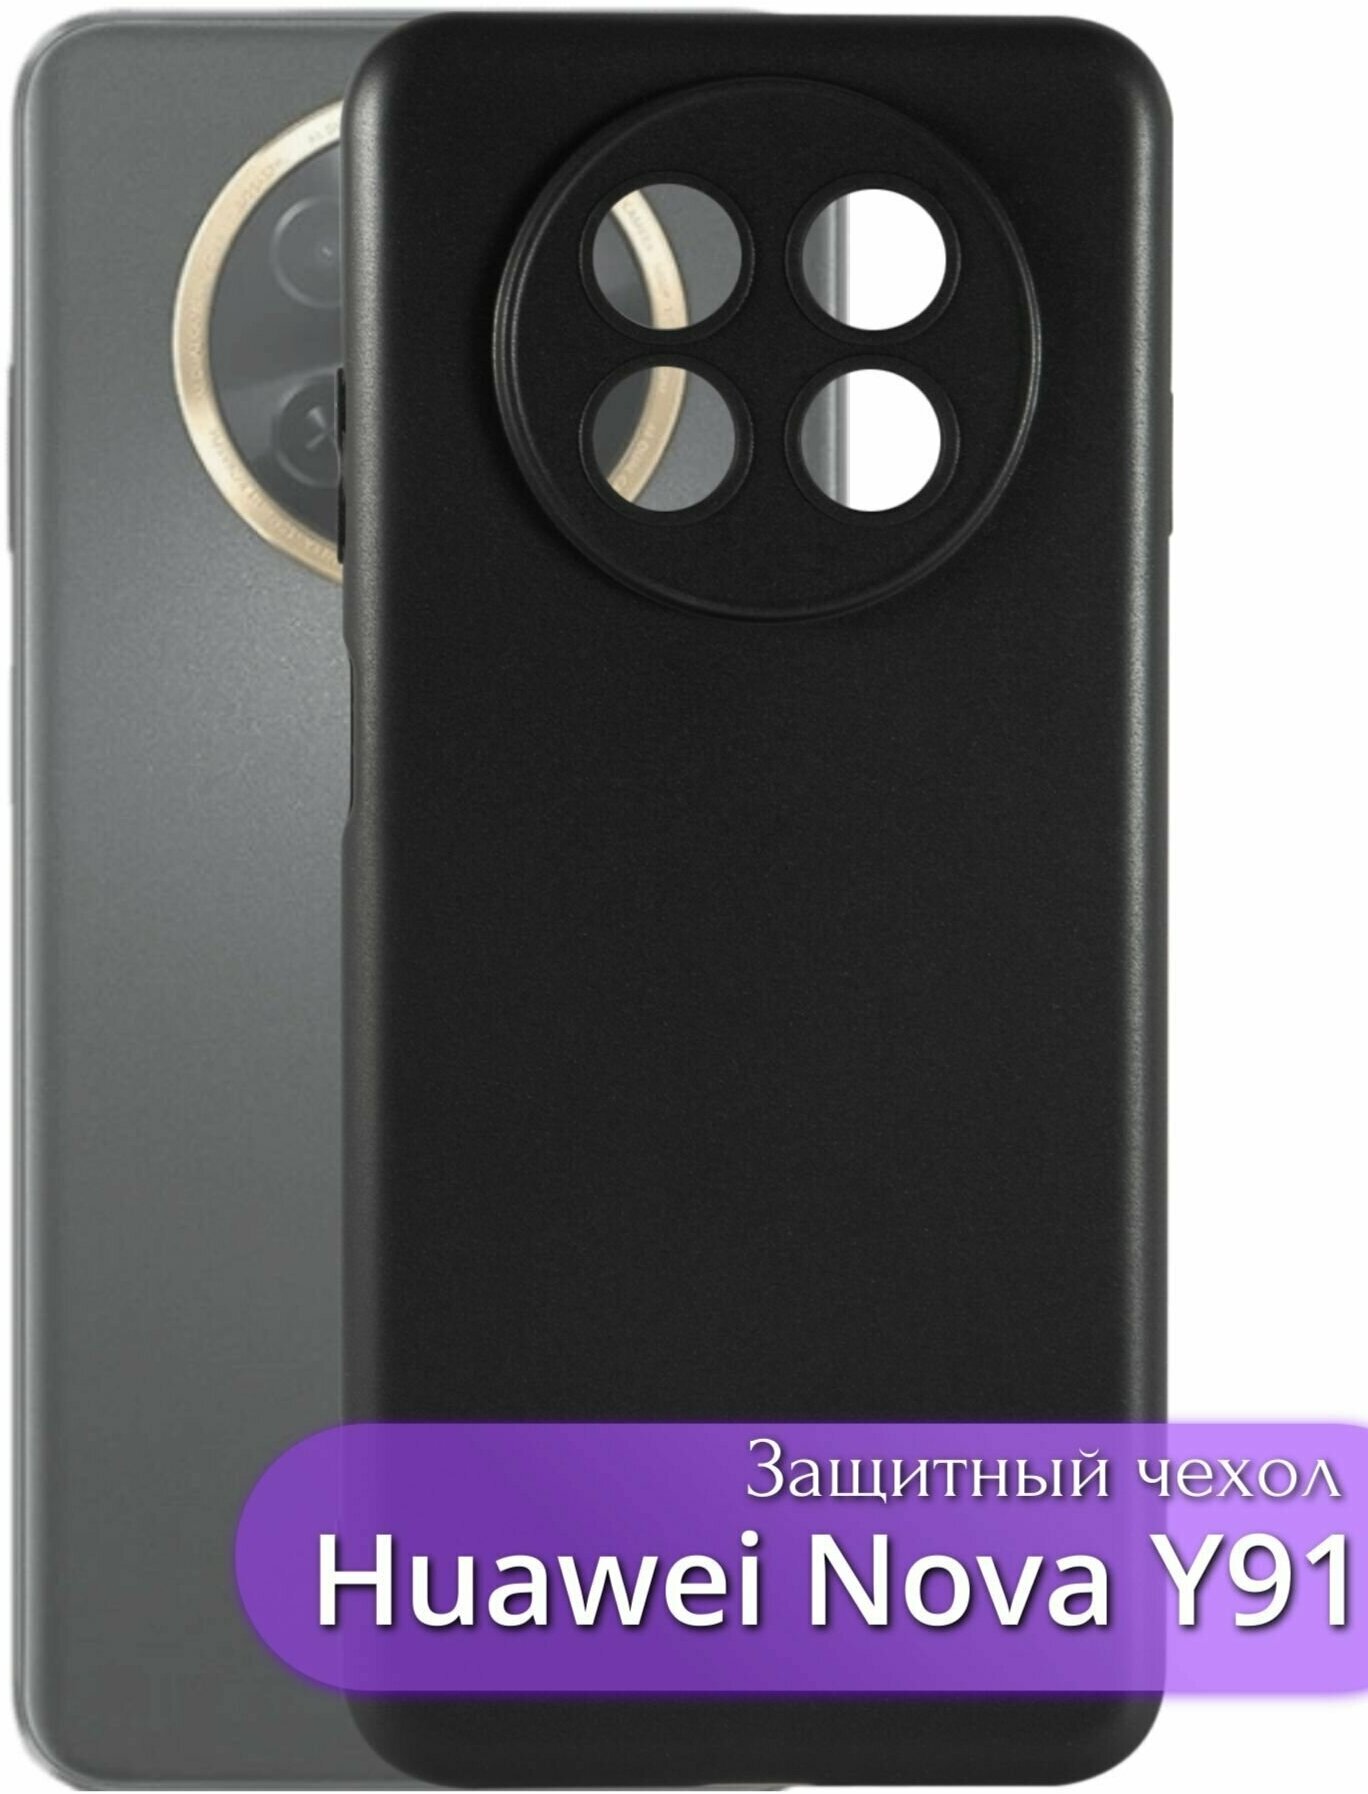 Защитный чехол Huawei Nova Y91/Хуавей Нова Y91 с защитой камеры, без подложки, черный